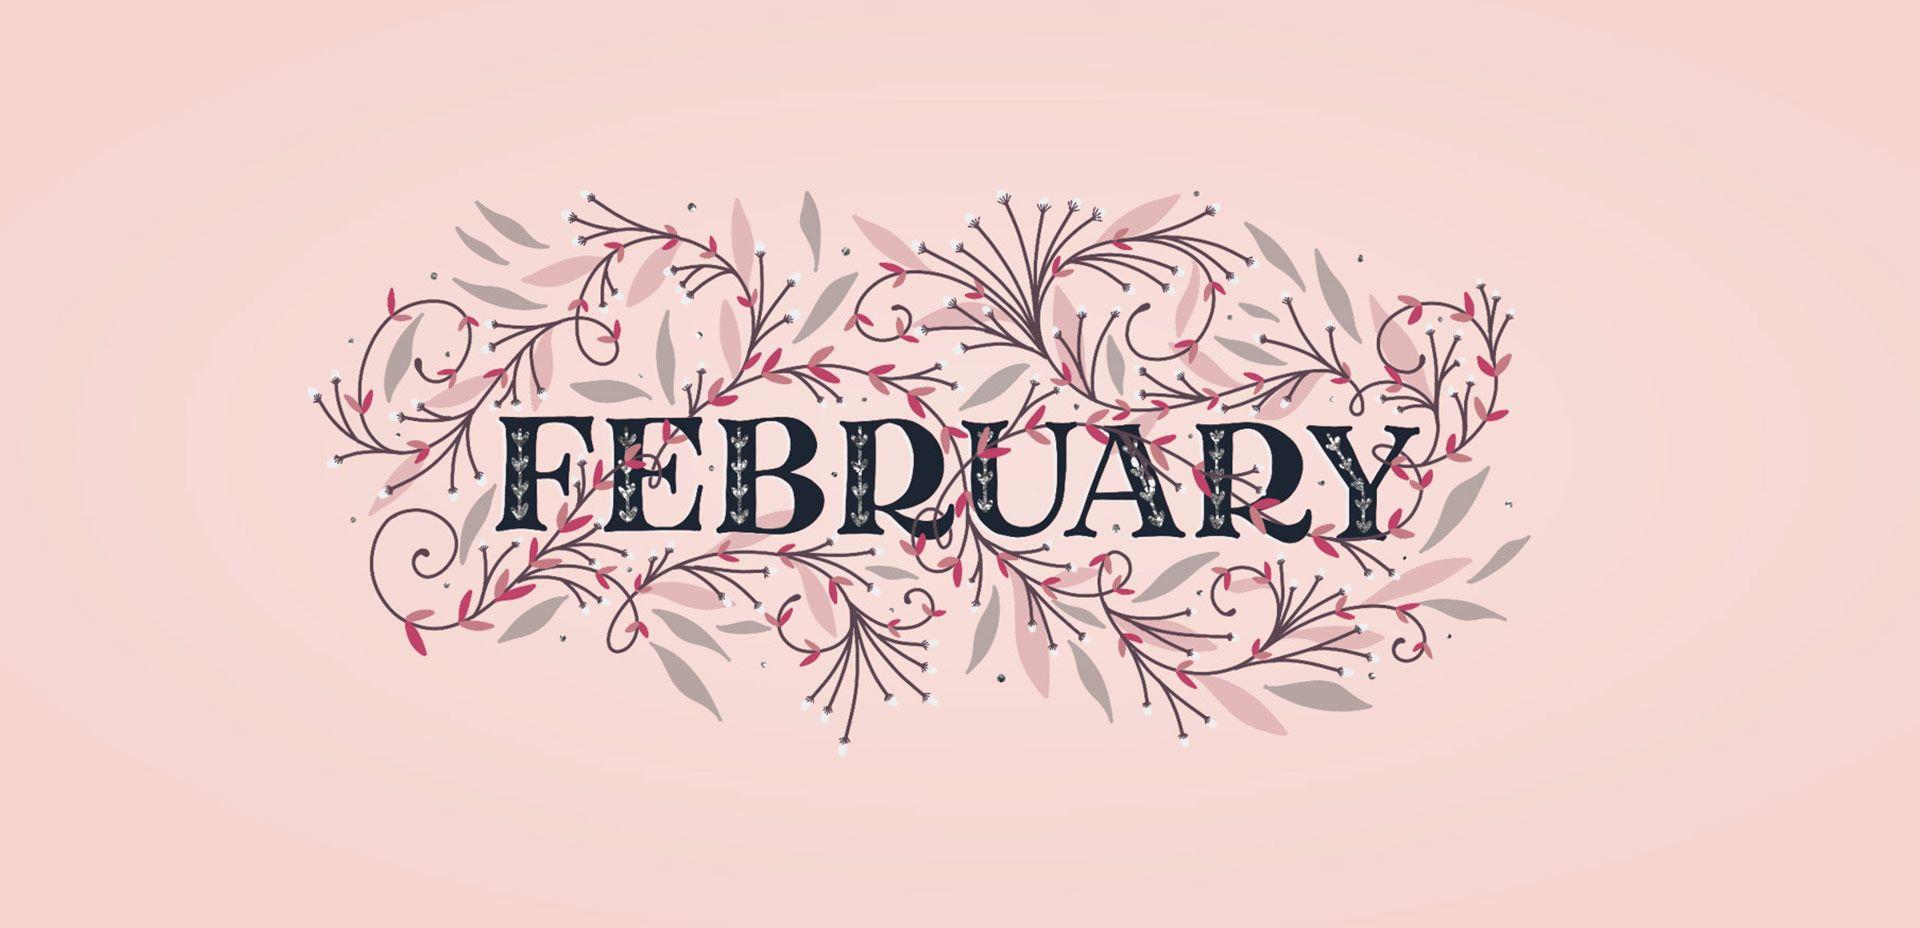 Freebie: February 2018 Desktop Wallpaper